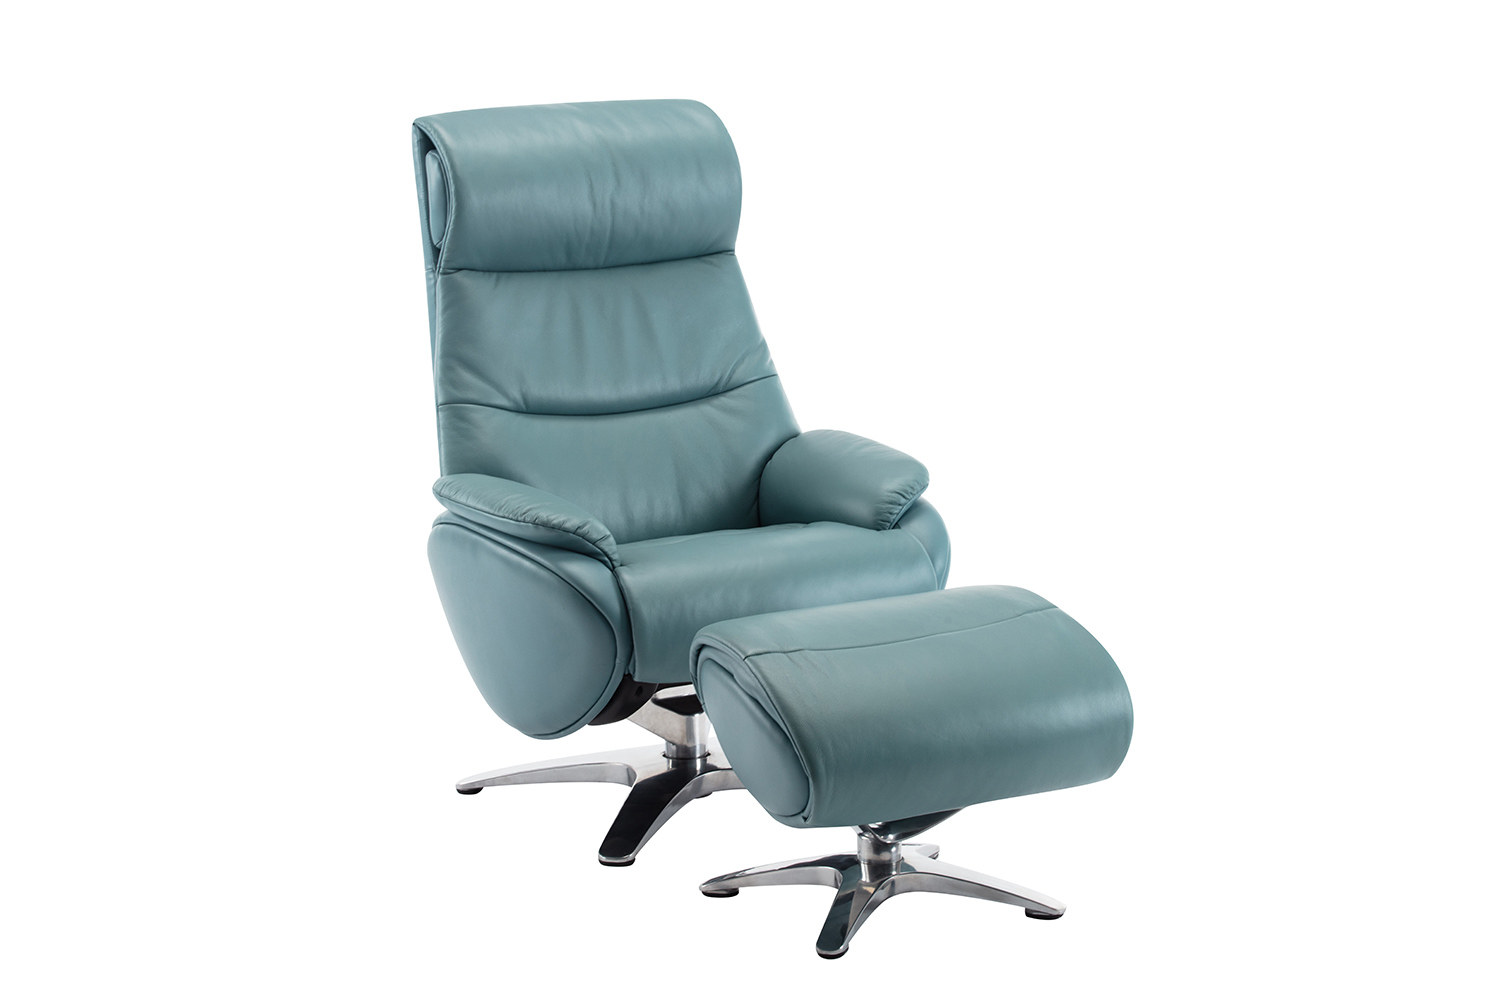 Barcalounger Adler Pedestal Recliner Chair and Ottoman - Capri Blue/Leather match